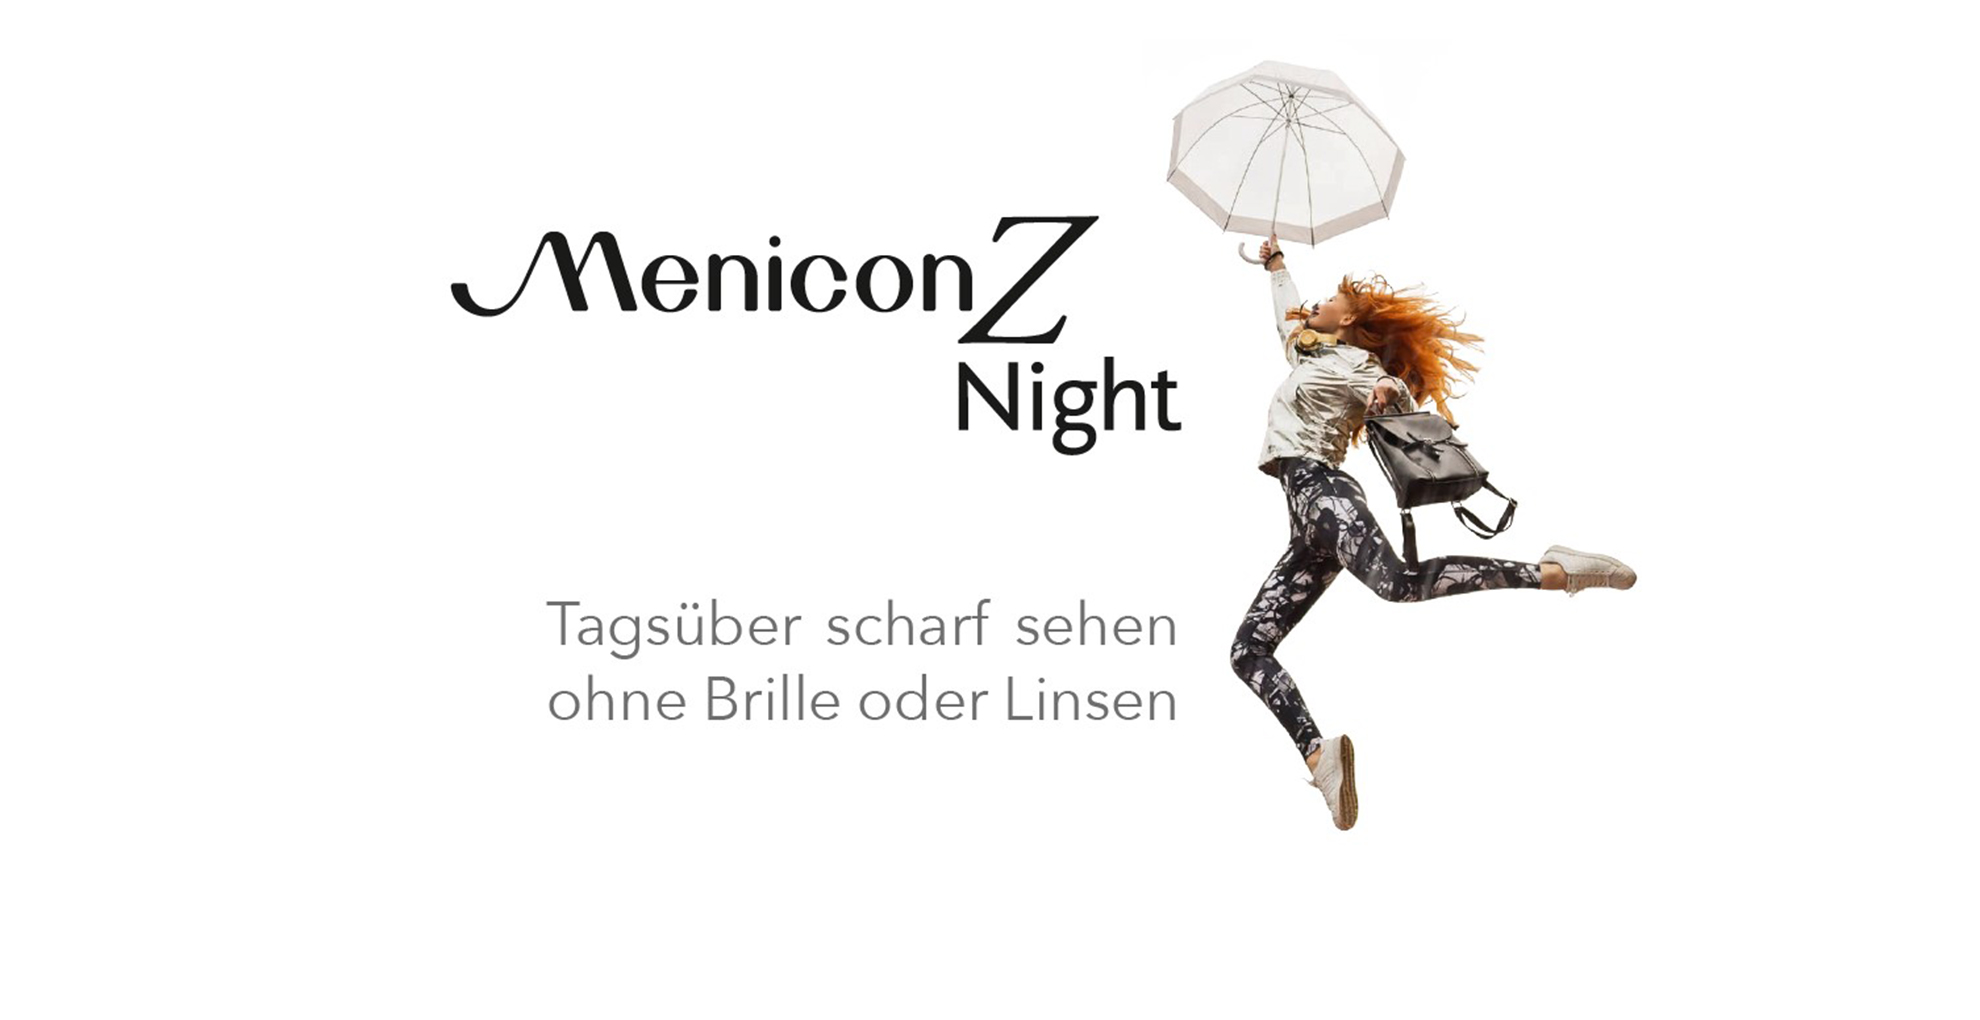 Menicon Z Night Imagebild